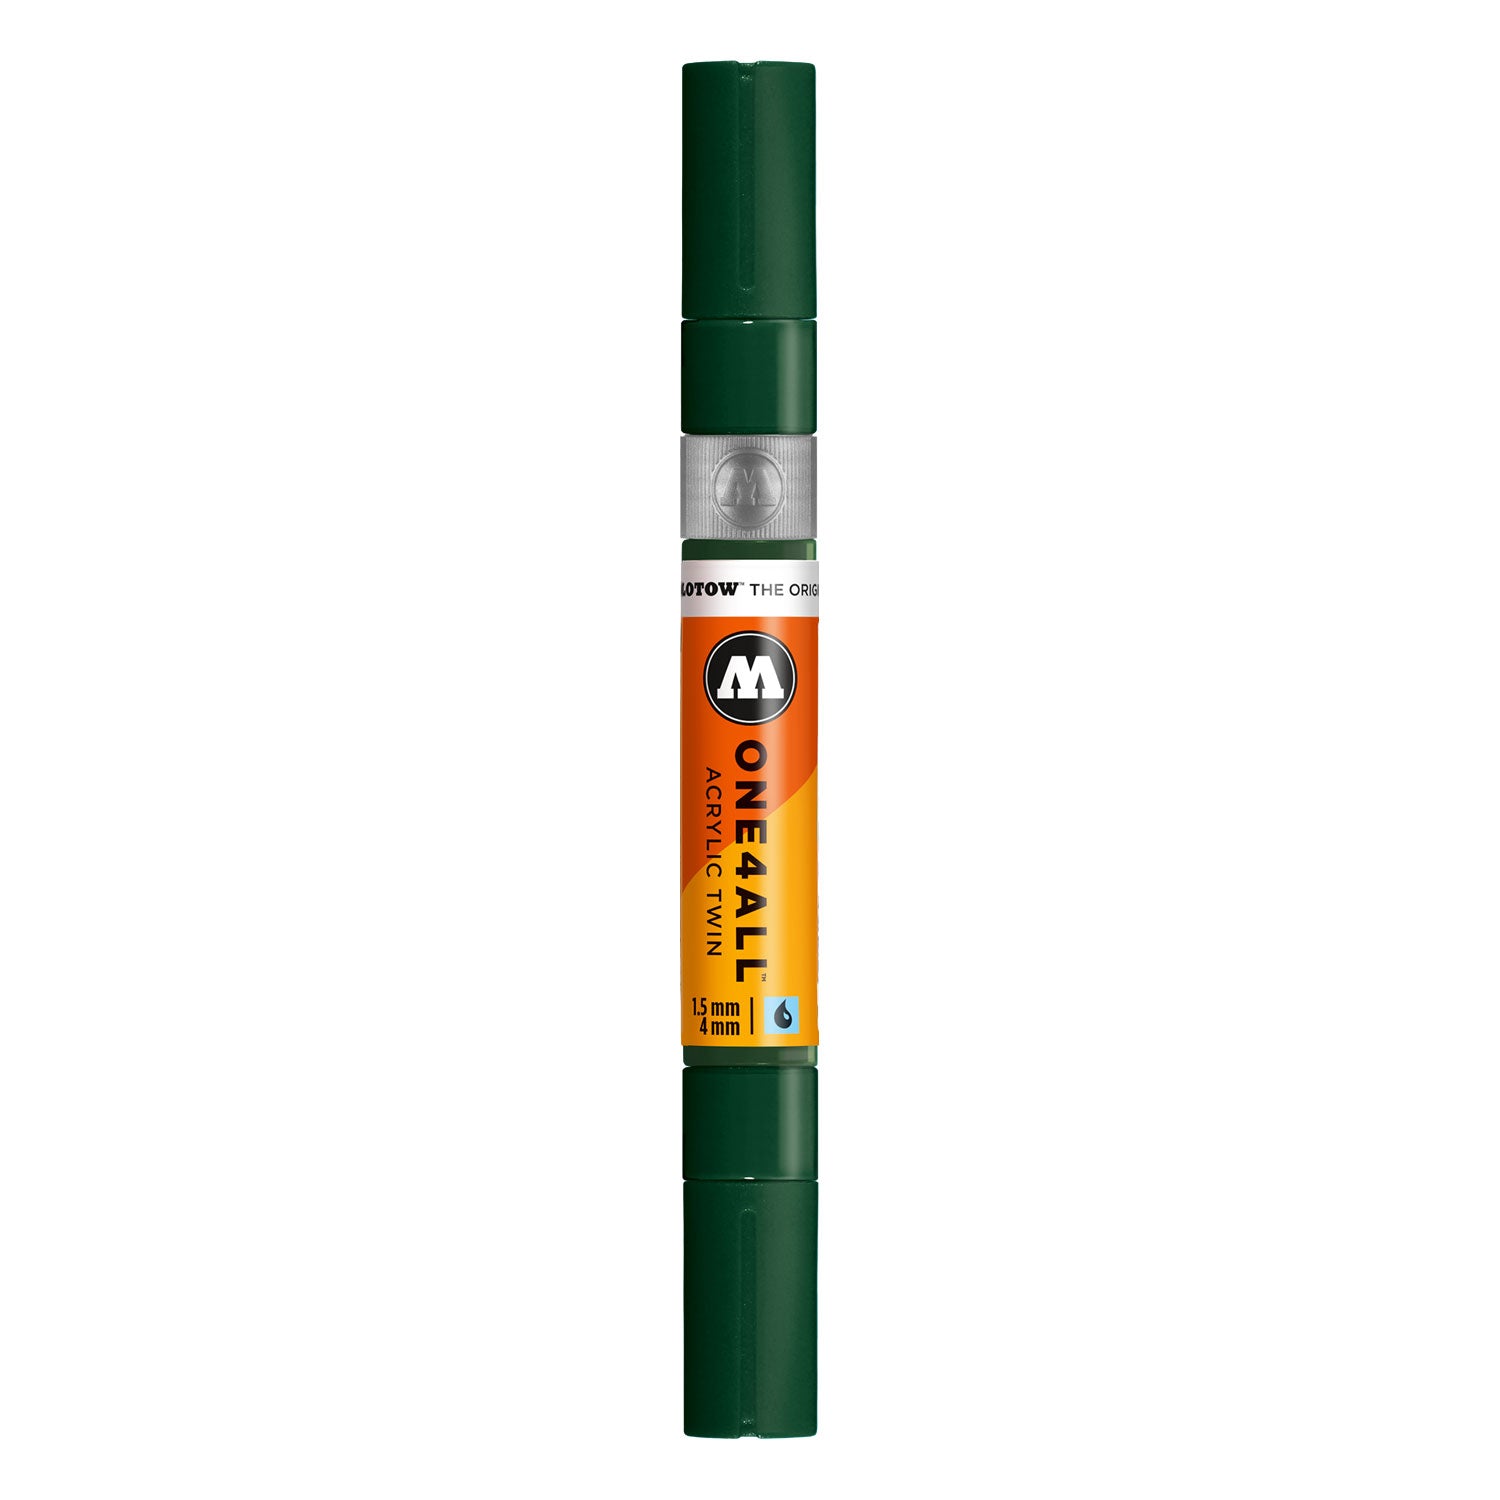 grüner Acrylmarker // ONE4ALL TWIN Marker // hochdeckend und UV-beständig